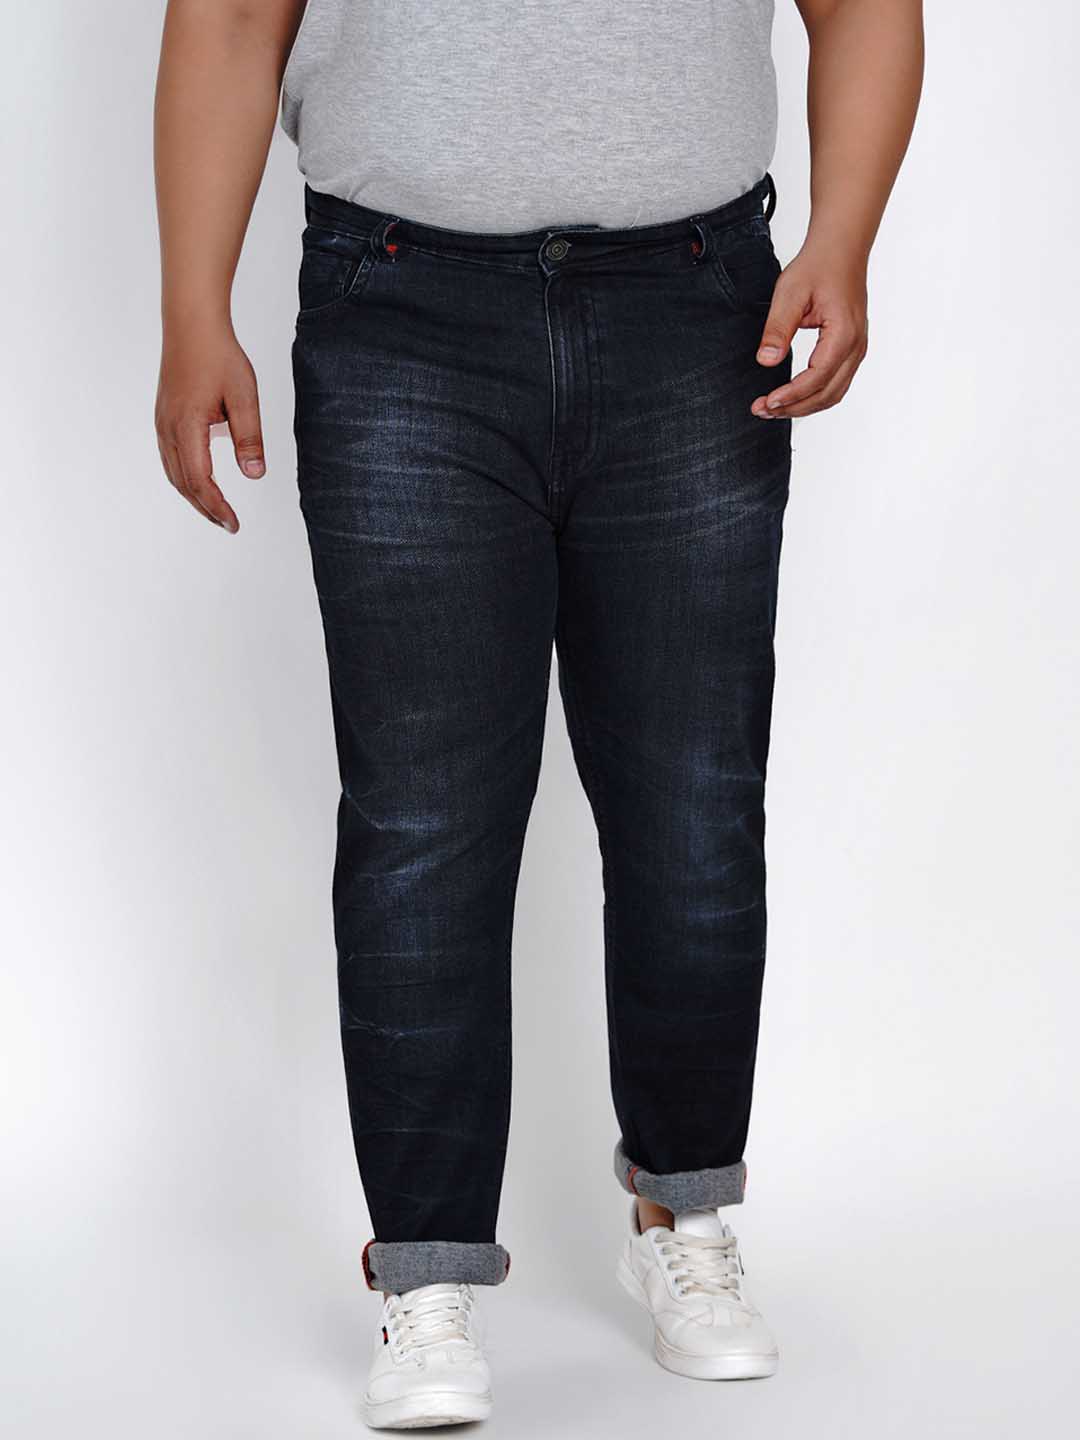 bottomwear/jeans/JPJ1282/jpj1282-2.jpg